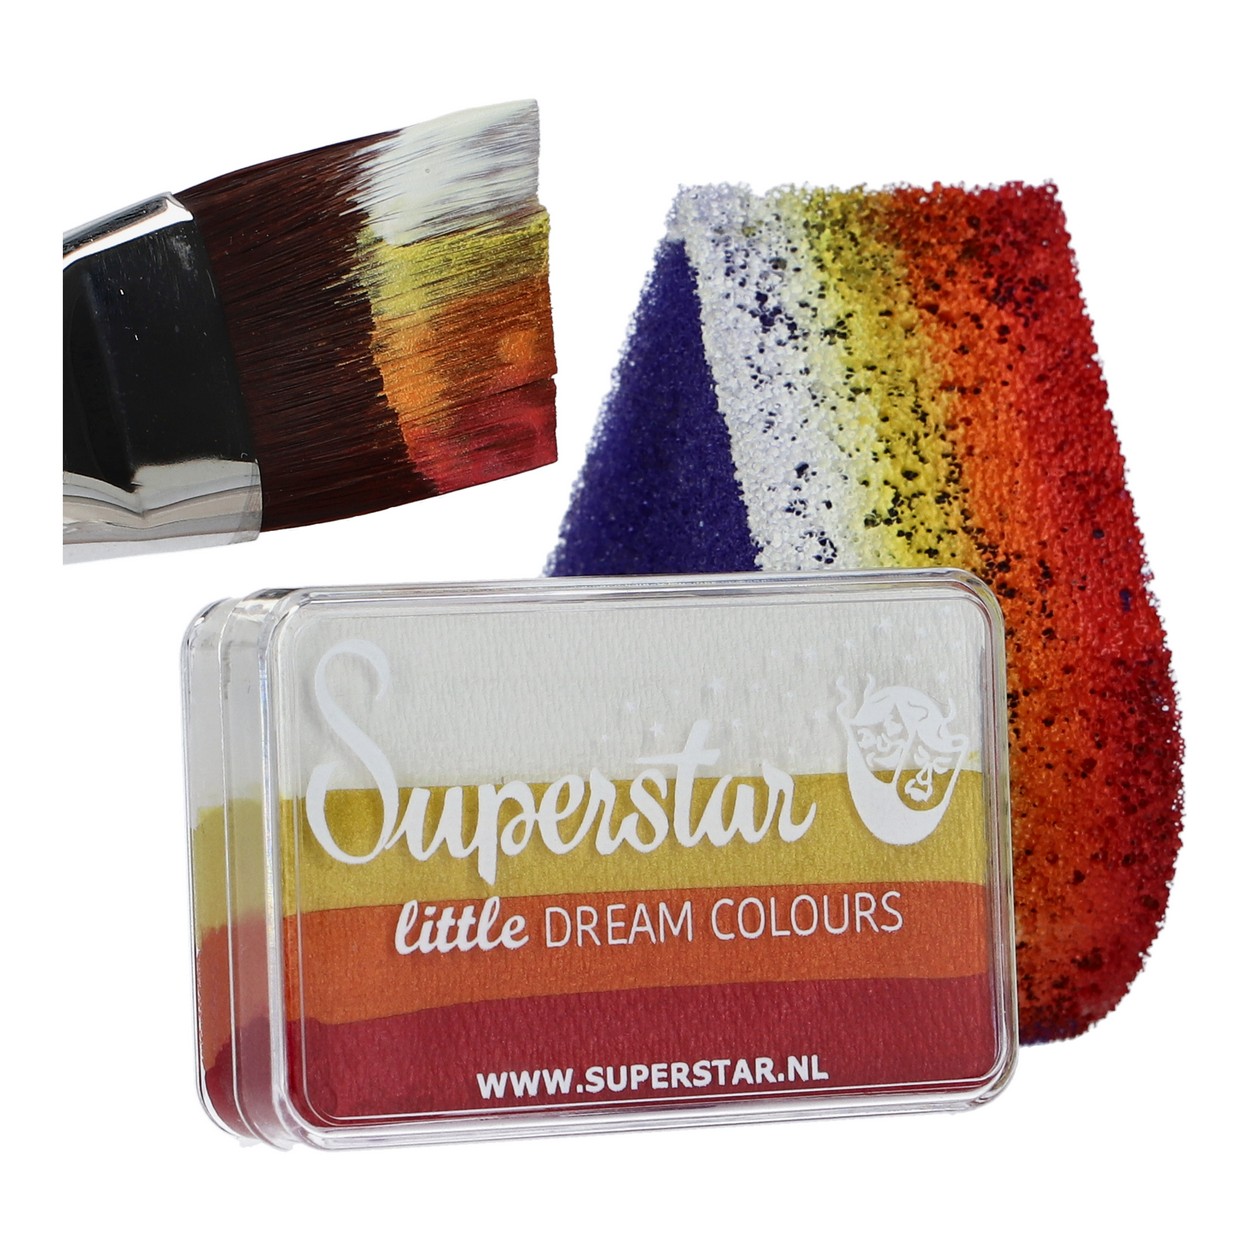 Superstar Little Dream Colours - Little Magic Sunrise, 30 gram